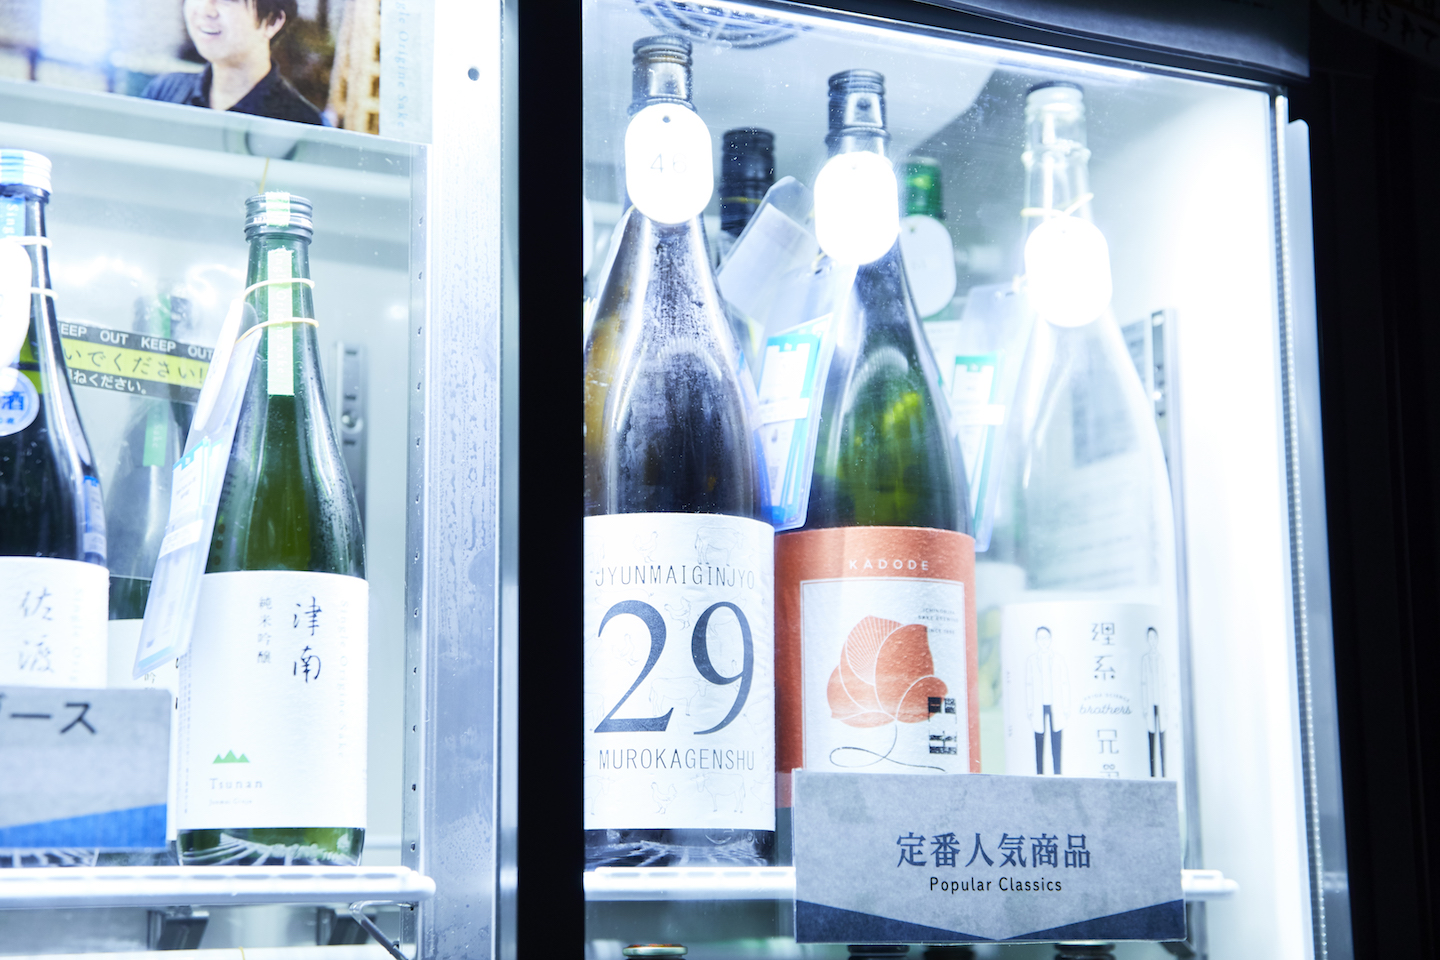 日本酒専門店・日本酒バーのKURANDSAKEMARKETnullのメインビジュアル